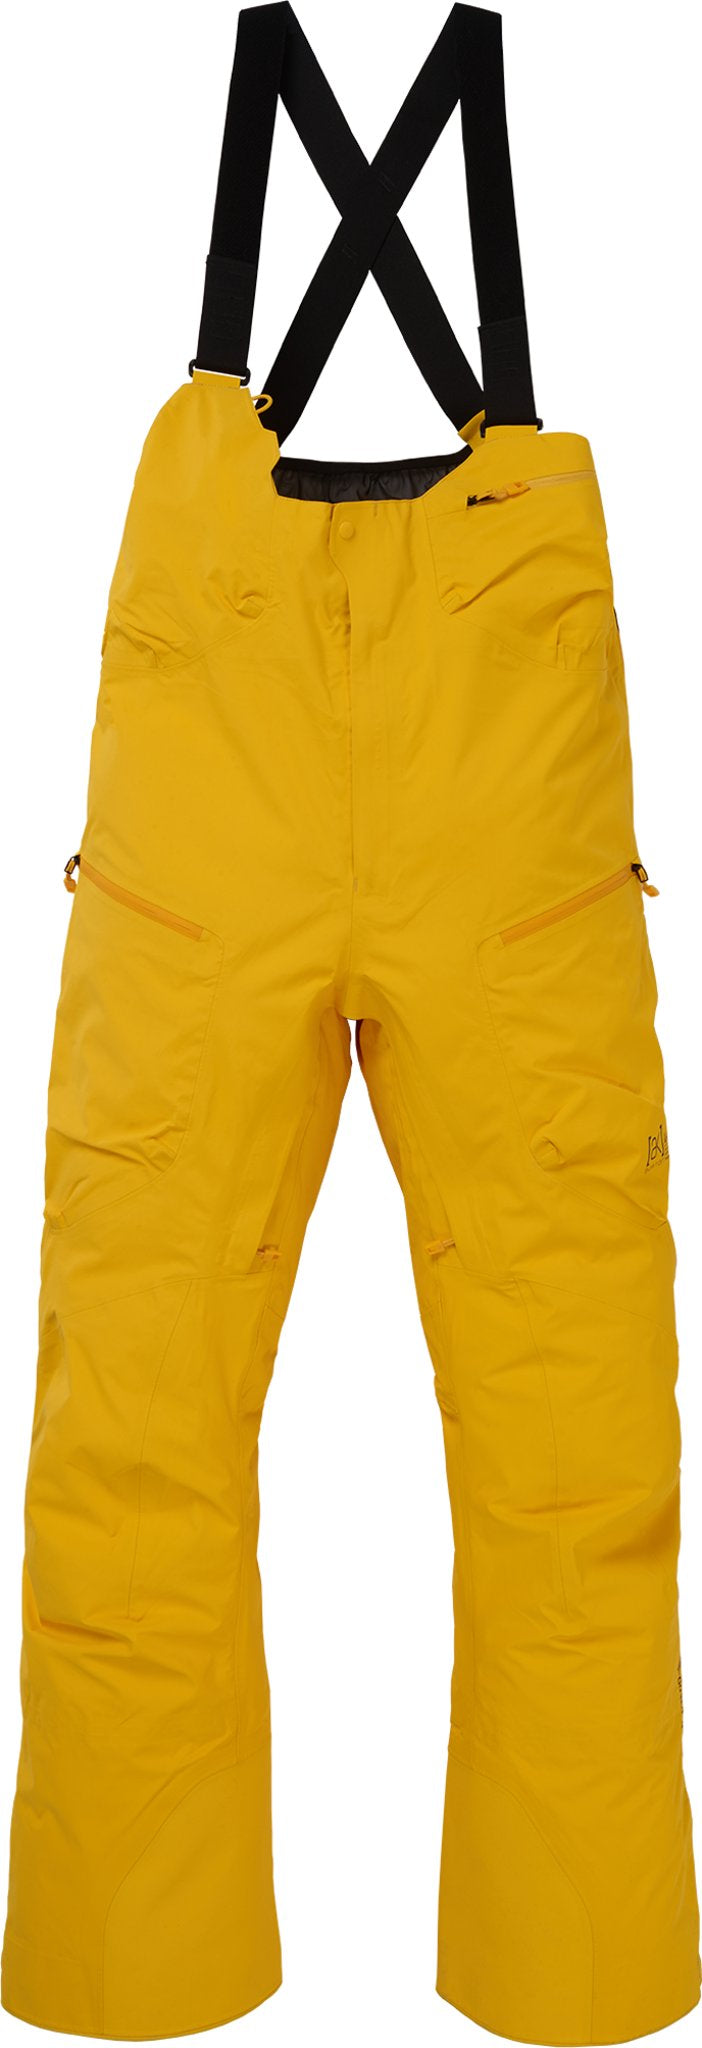 満点の burton ak457 hi-top pants GORE-TEX pro | www.takalamtech.com